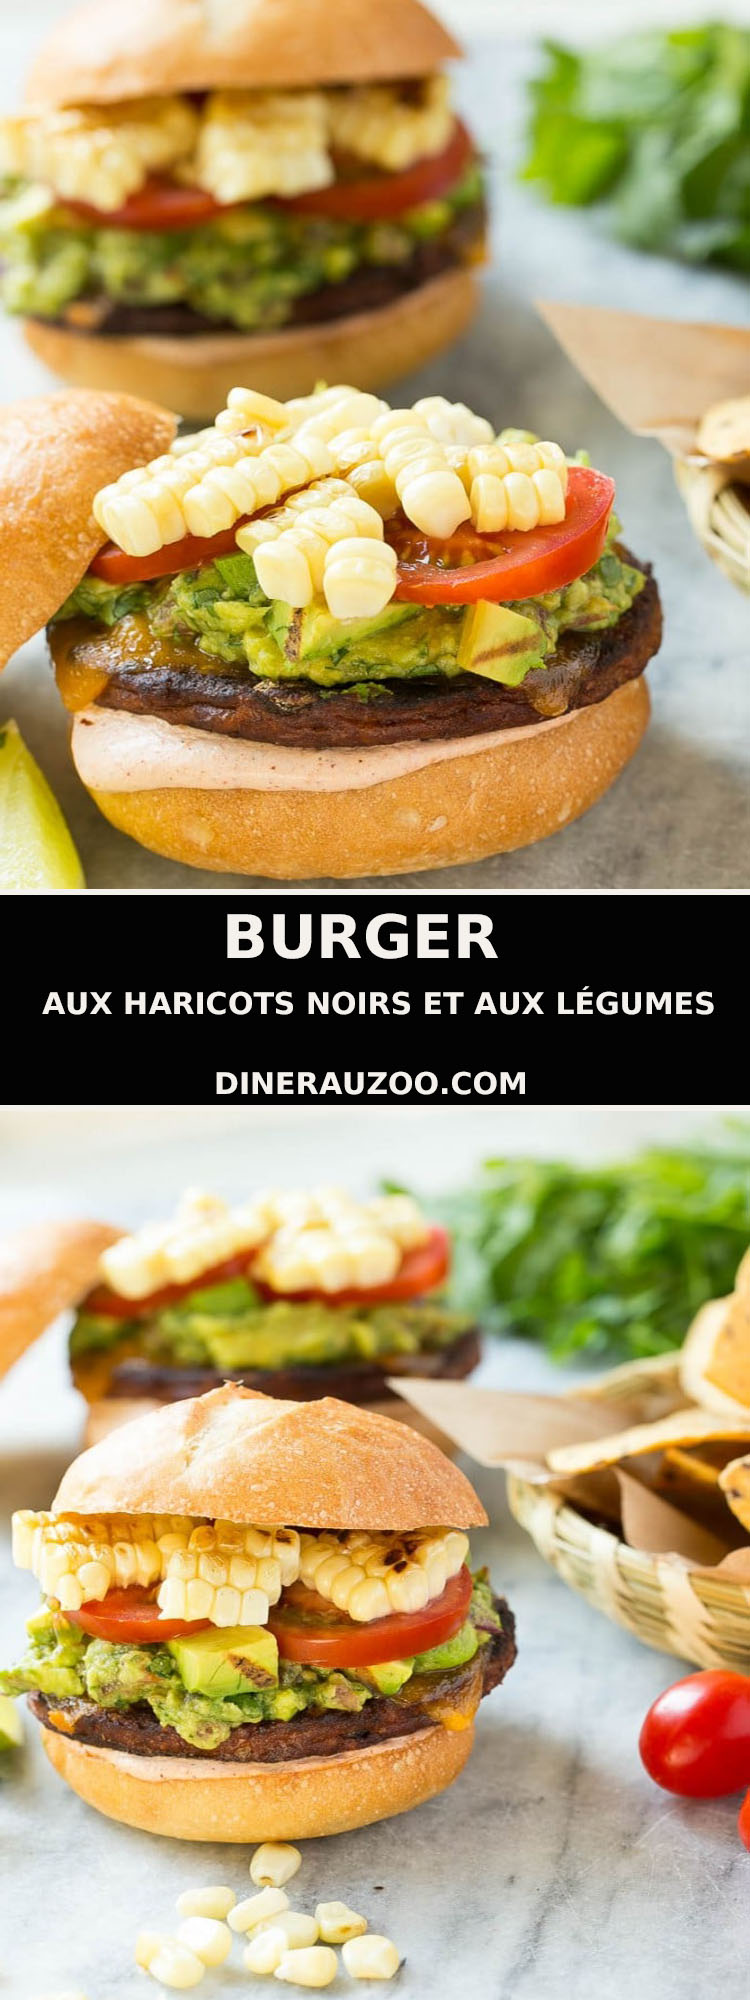 Burger aux Haricots Noirs et aux Legumes1